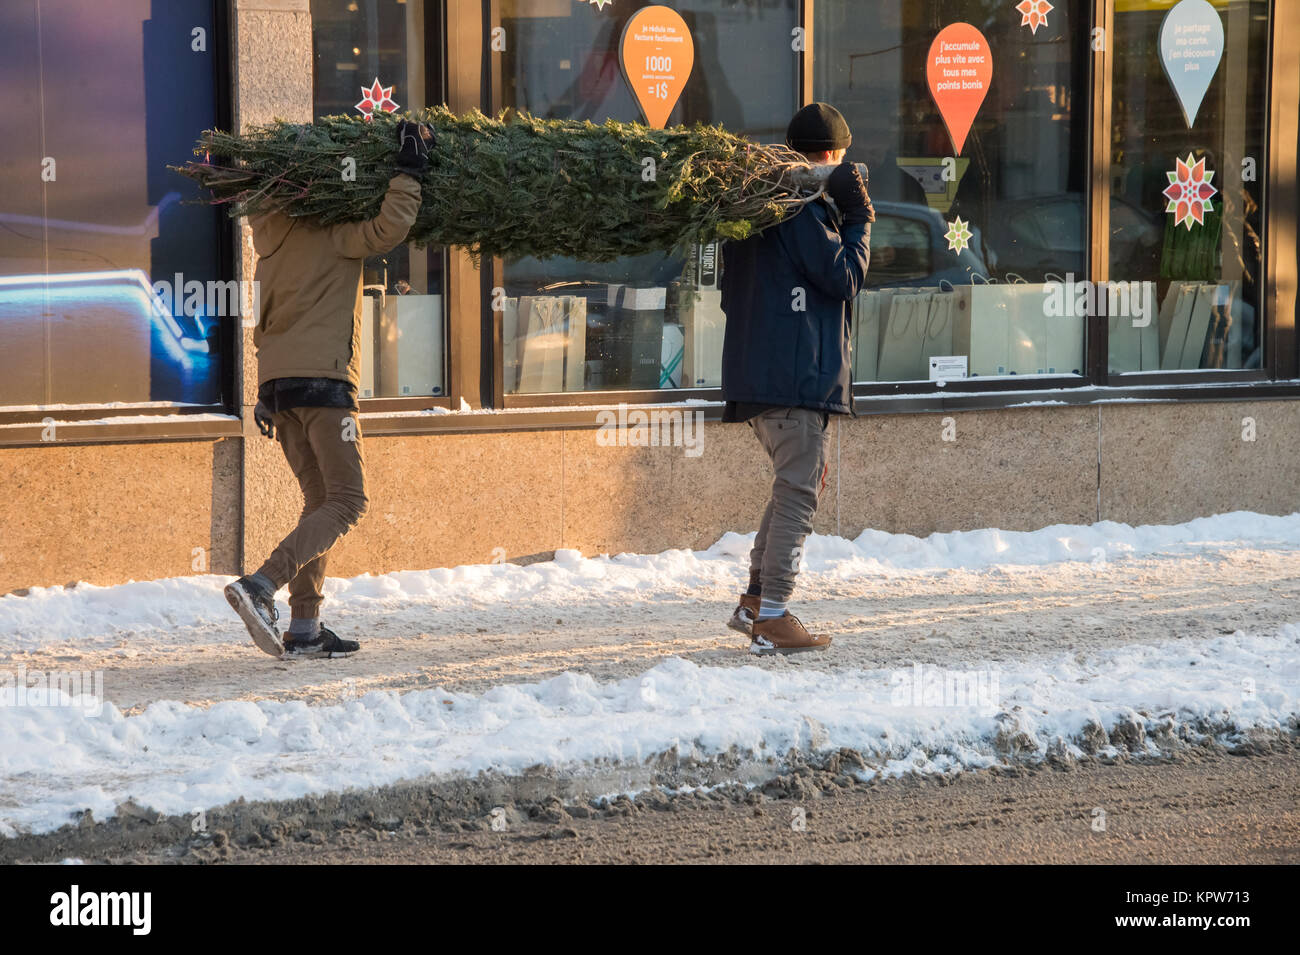 Montréal, Canada - 16 décembre 2017 : deux hommes sont porteurs d'un arbre de Noël Banque D'Images